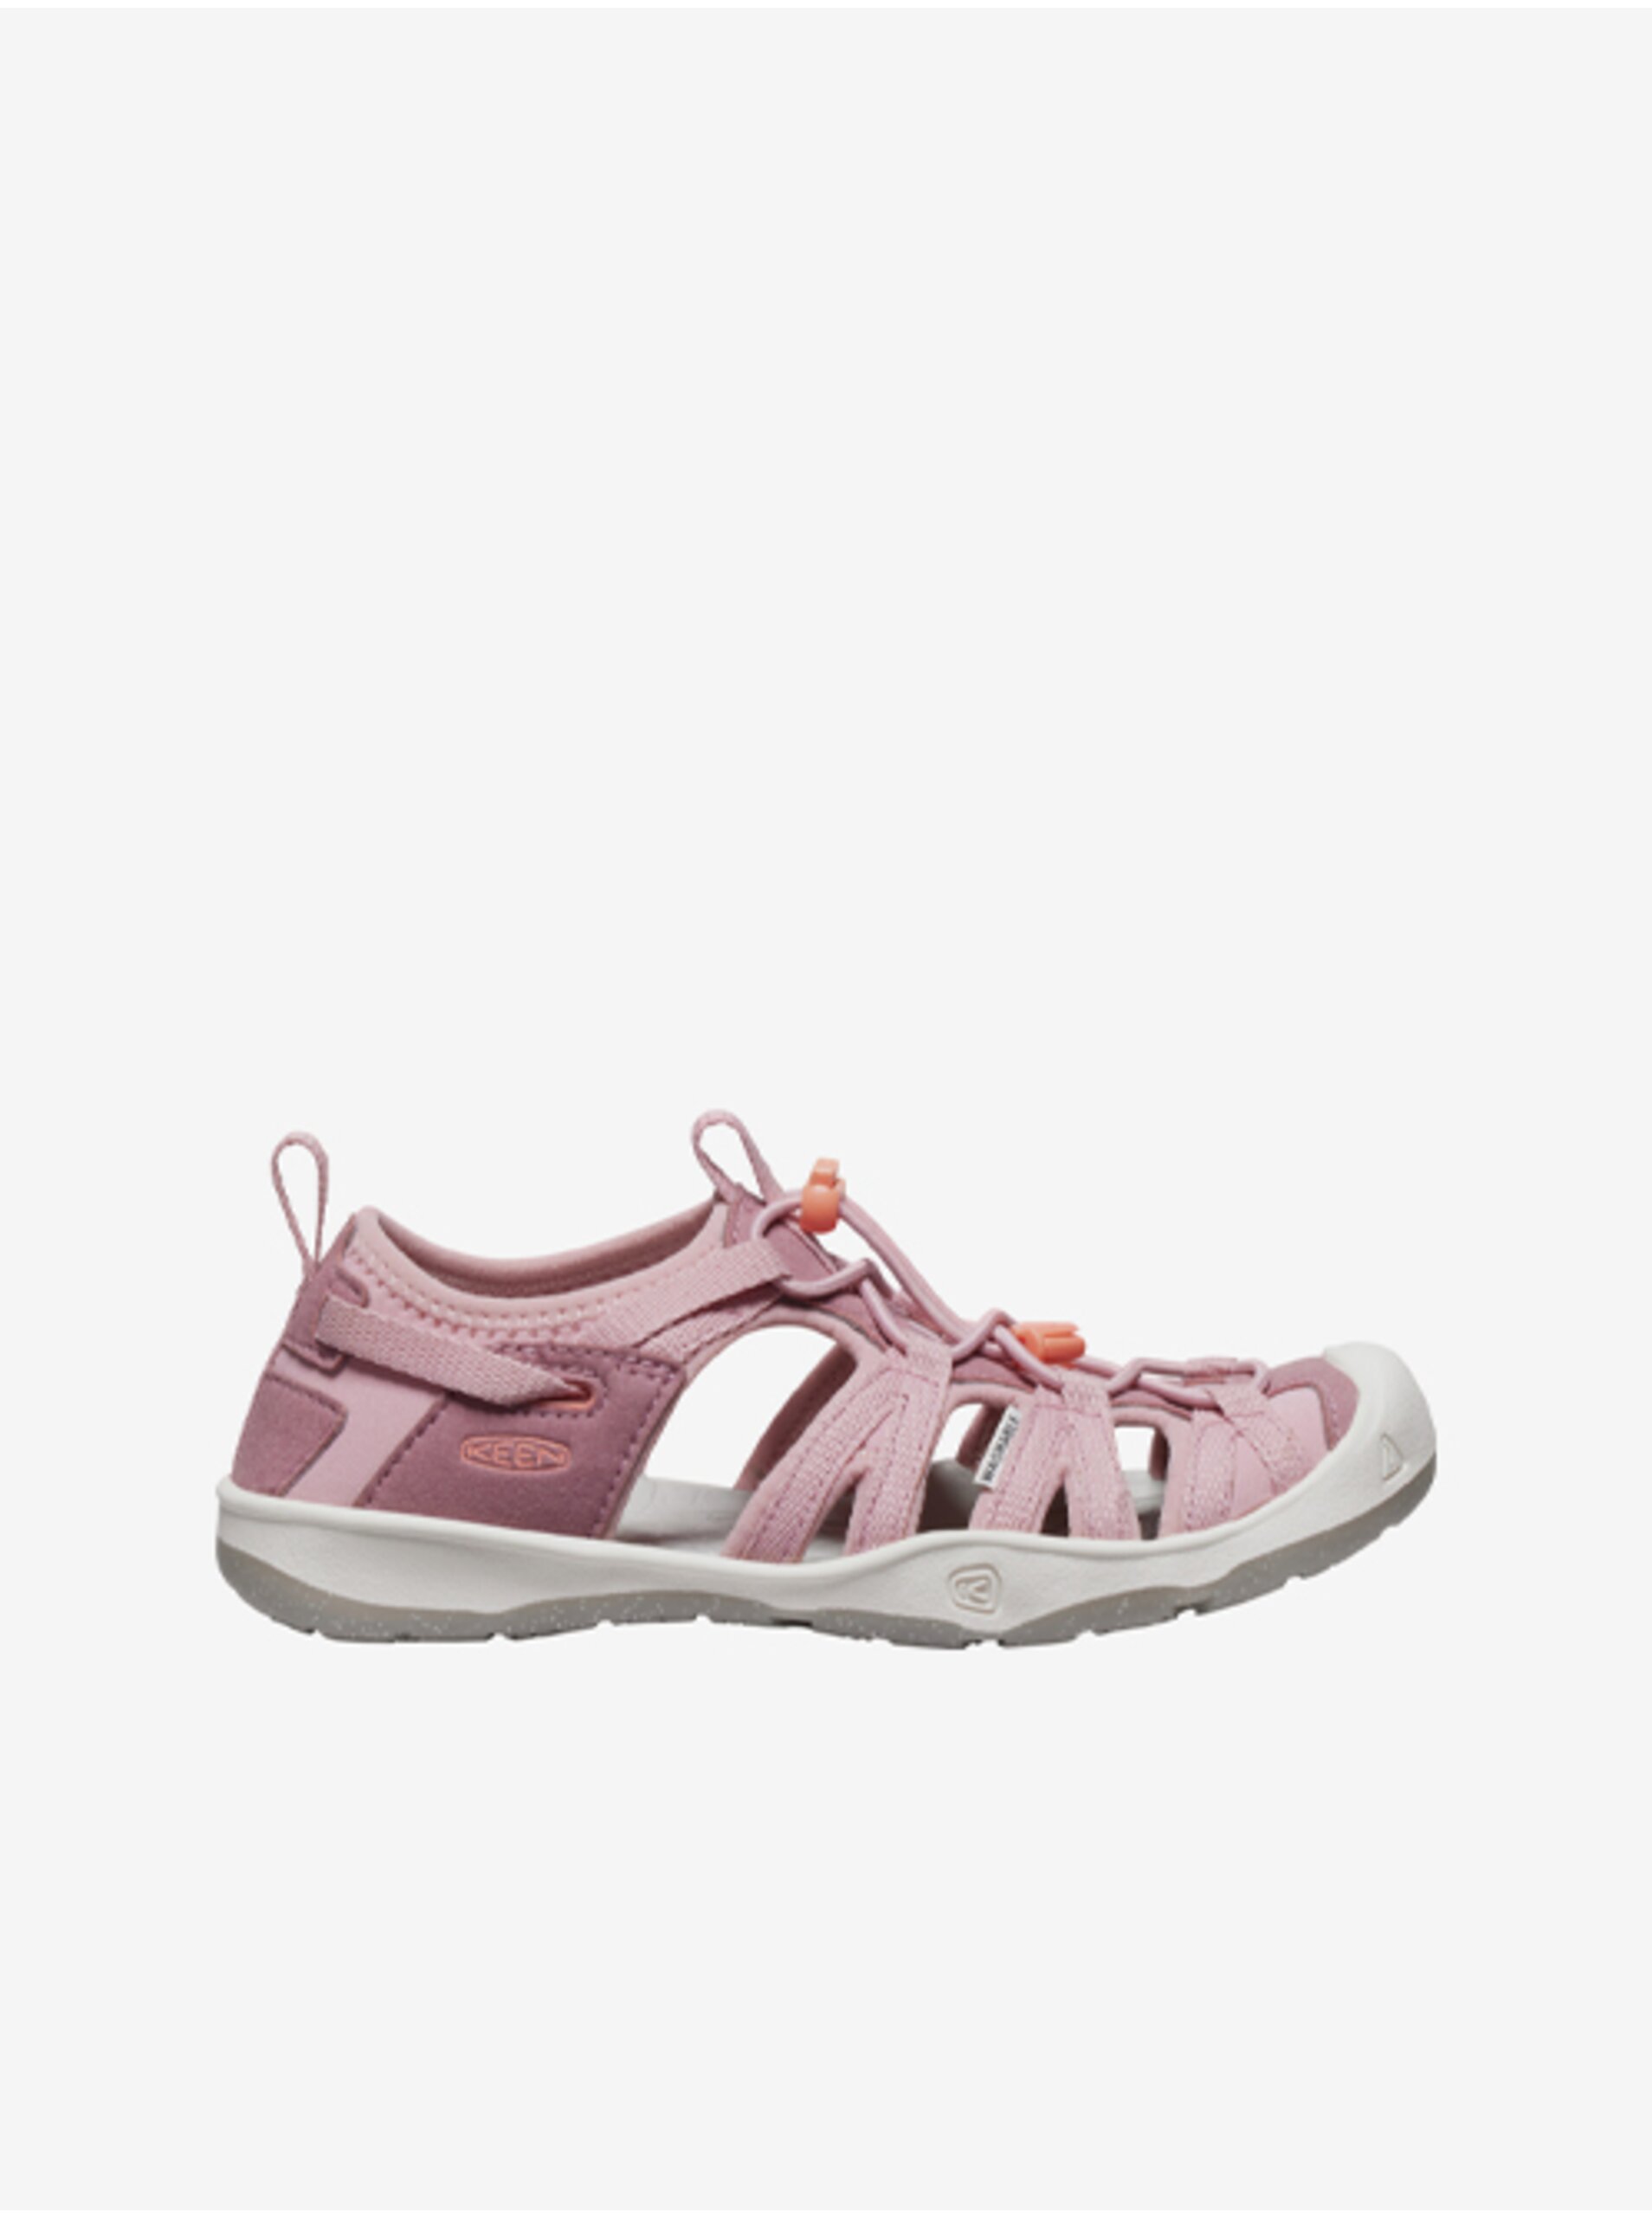 Lacno Ružové dievčenské outdoorové sandále Keen Moxie Sandal Youth